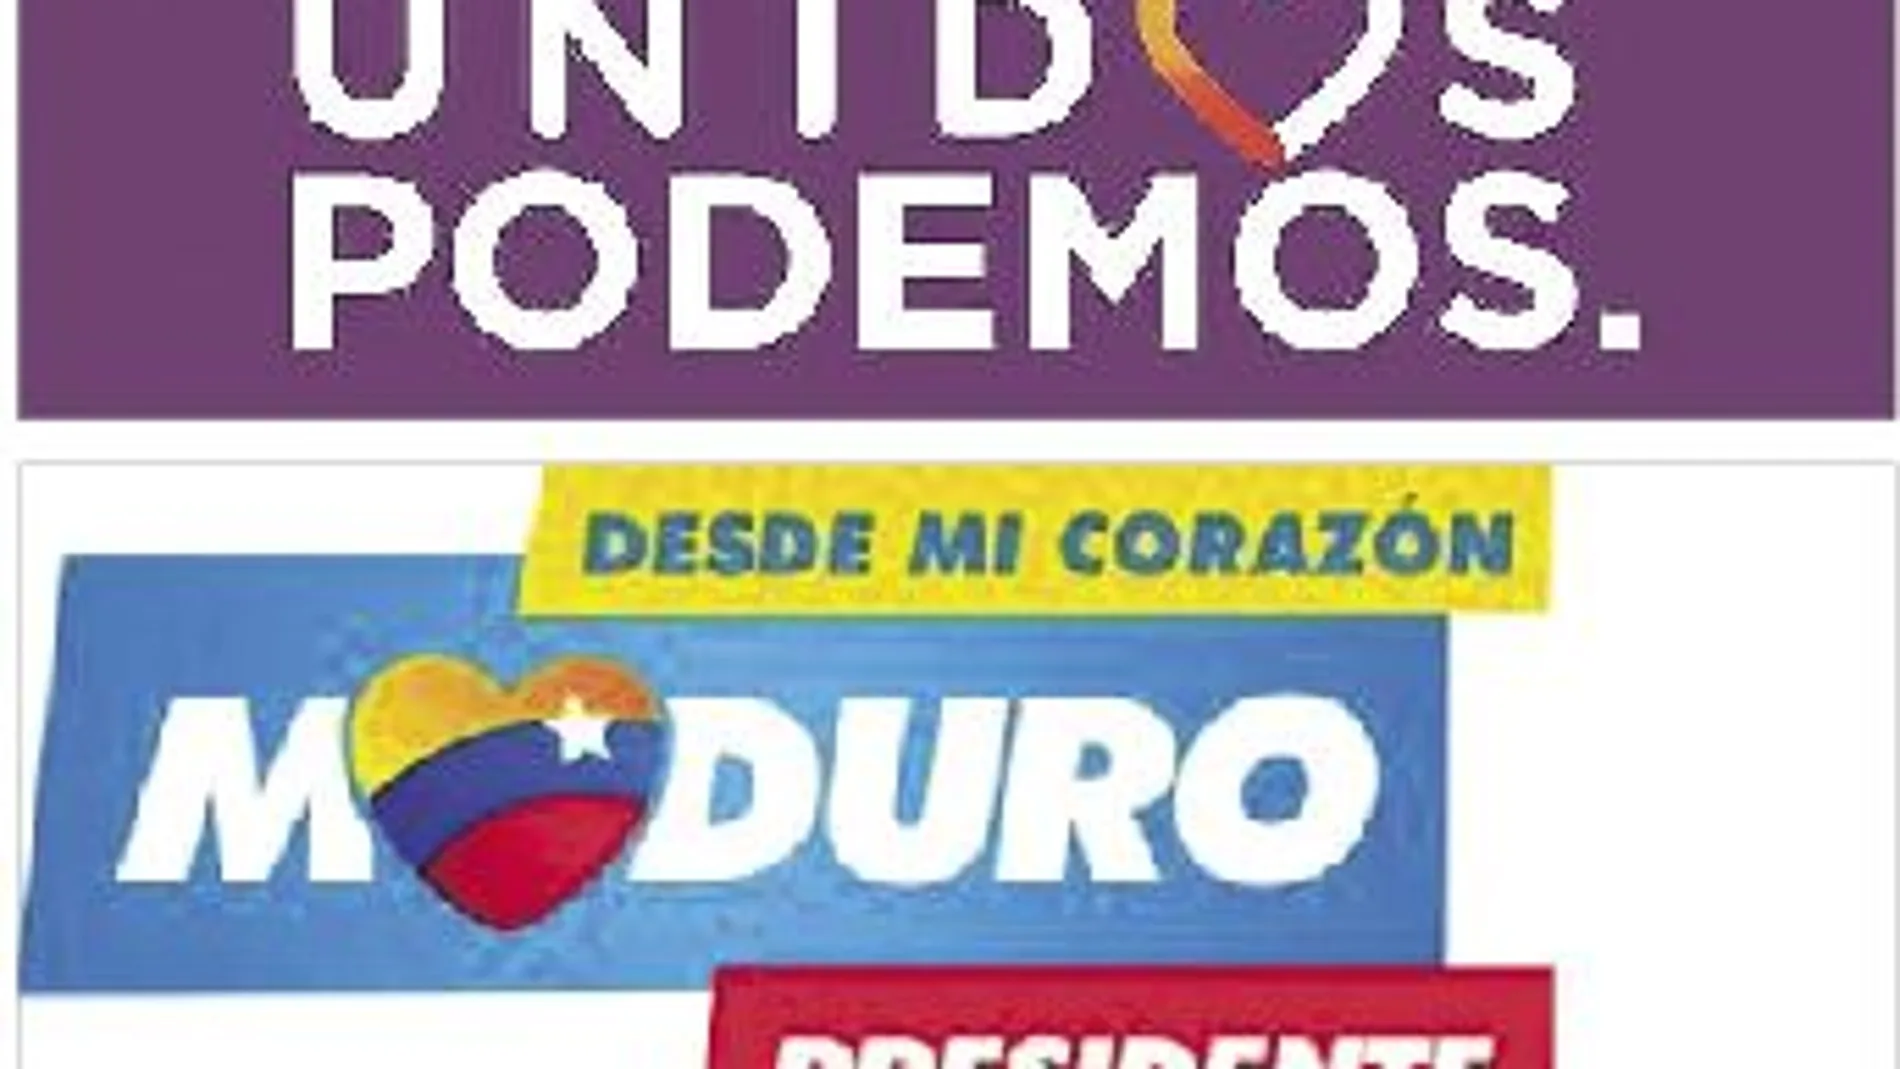 El corazón de Unidos Podemos recuerda al que llevó al poder a Maduro en 2013. En aquel entonces la Fundación CEPS, embrión político de Podemos, era el principal asesor de imagen del régimen chavista.